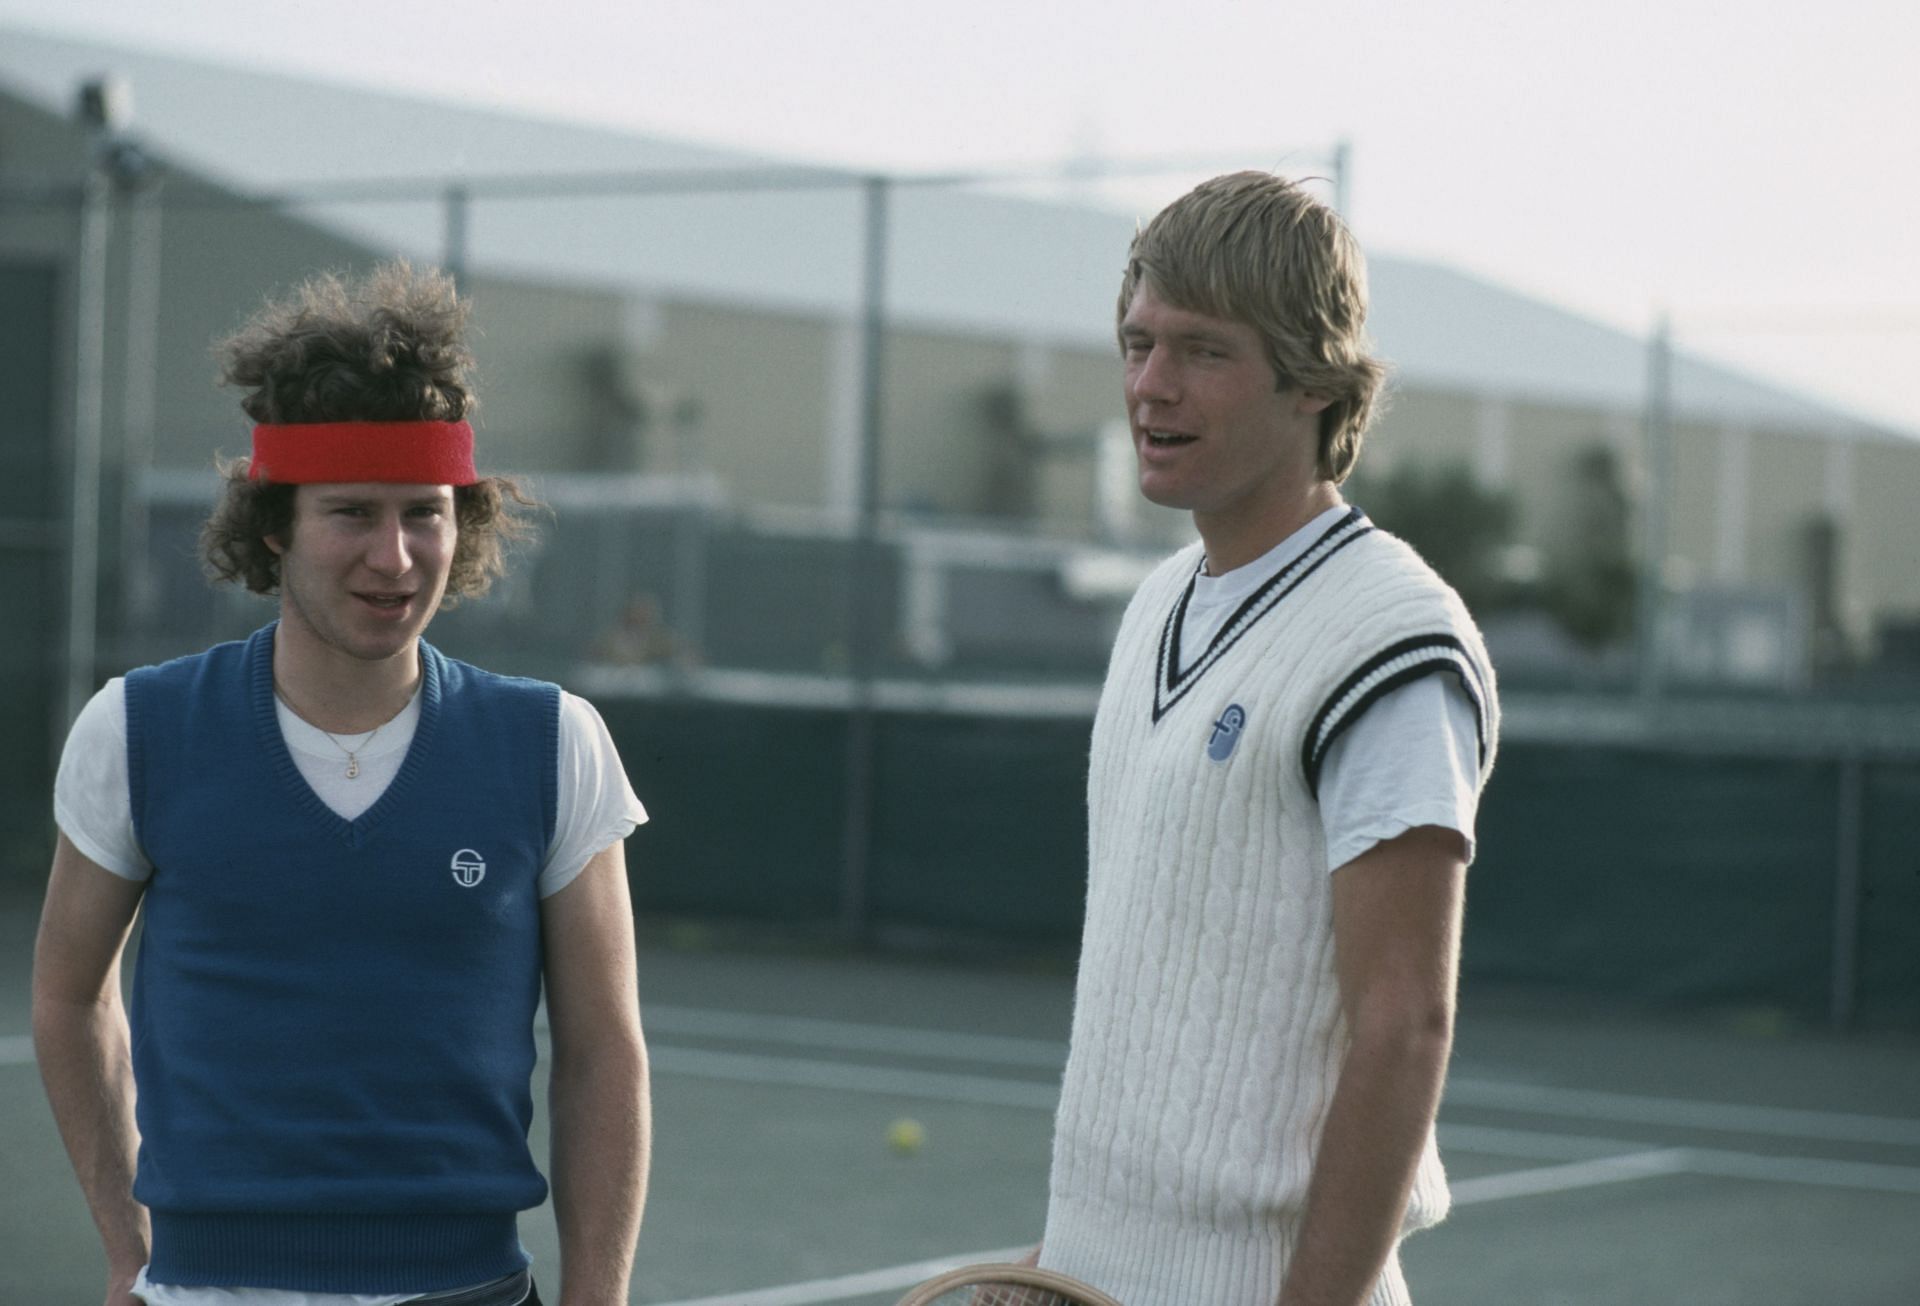 John McEnroe (left) in 1980